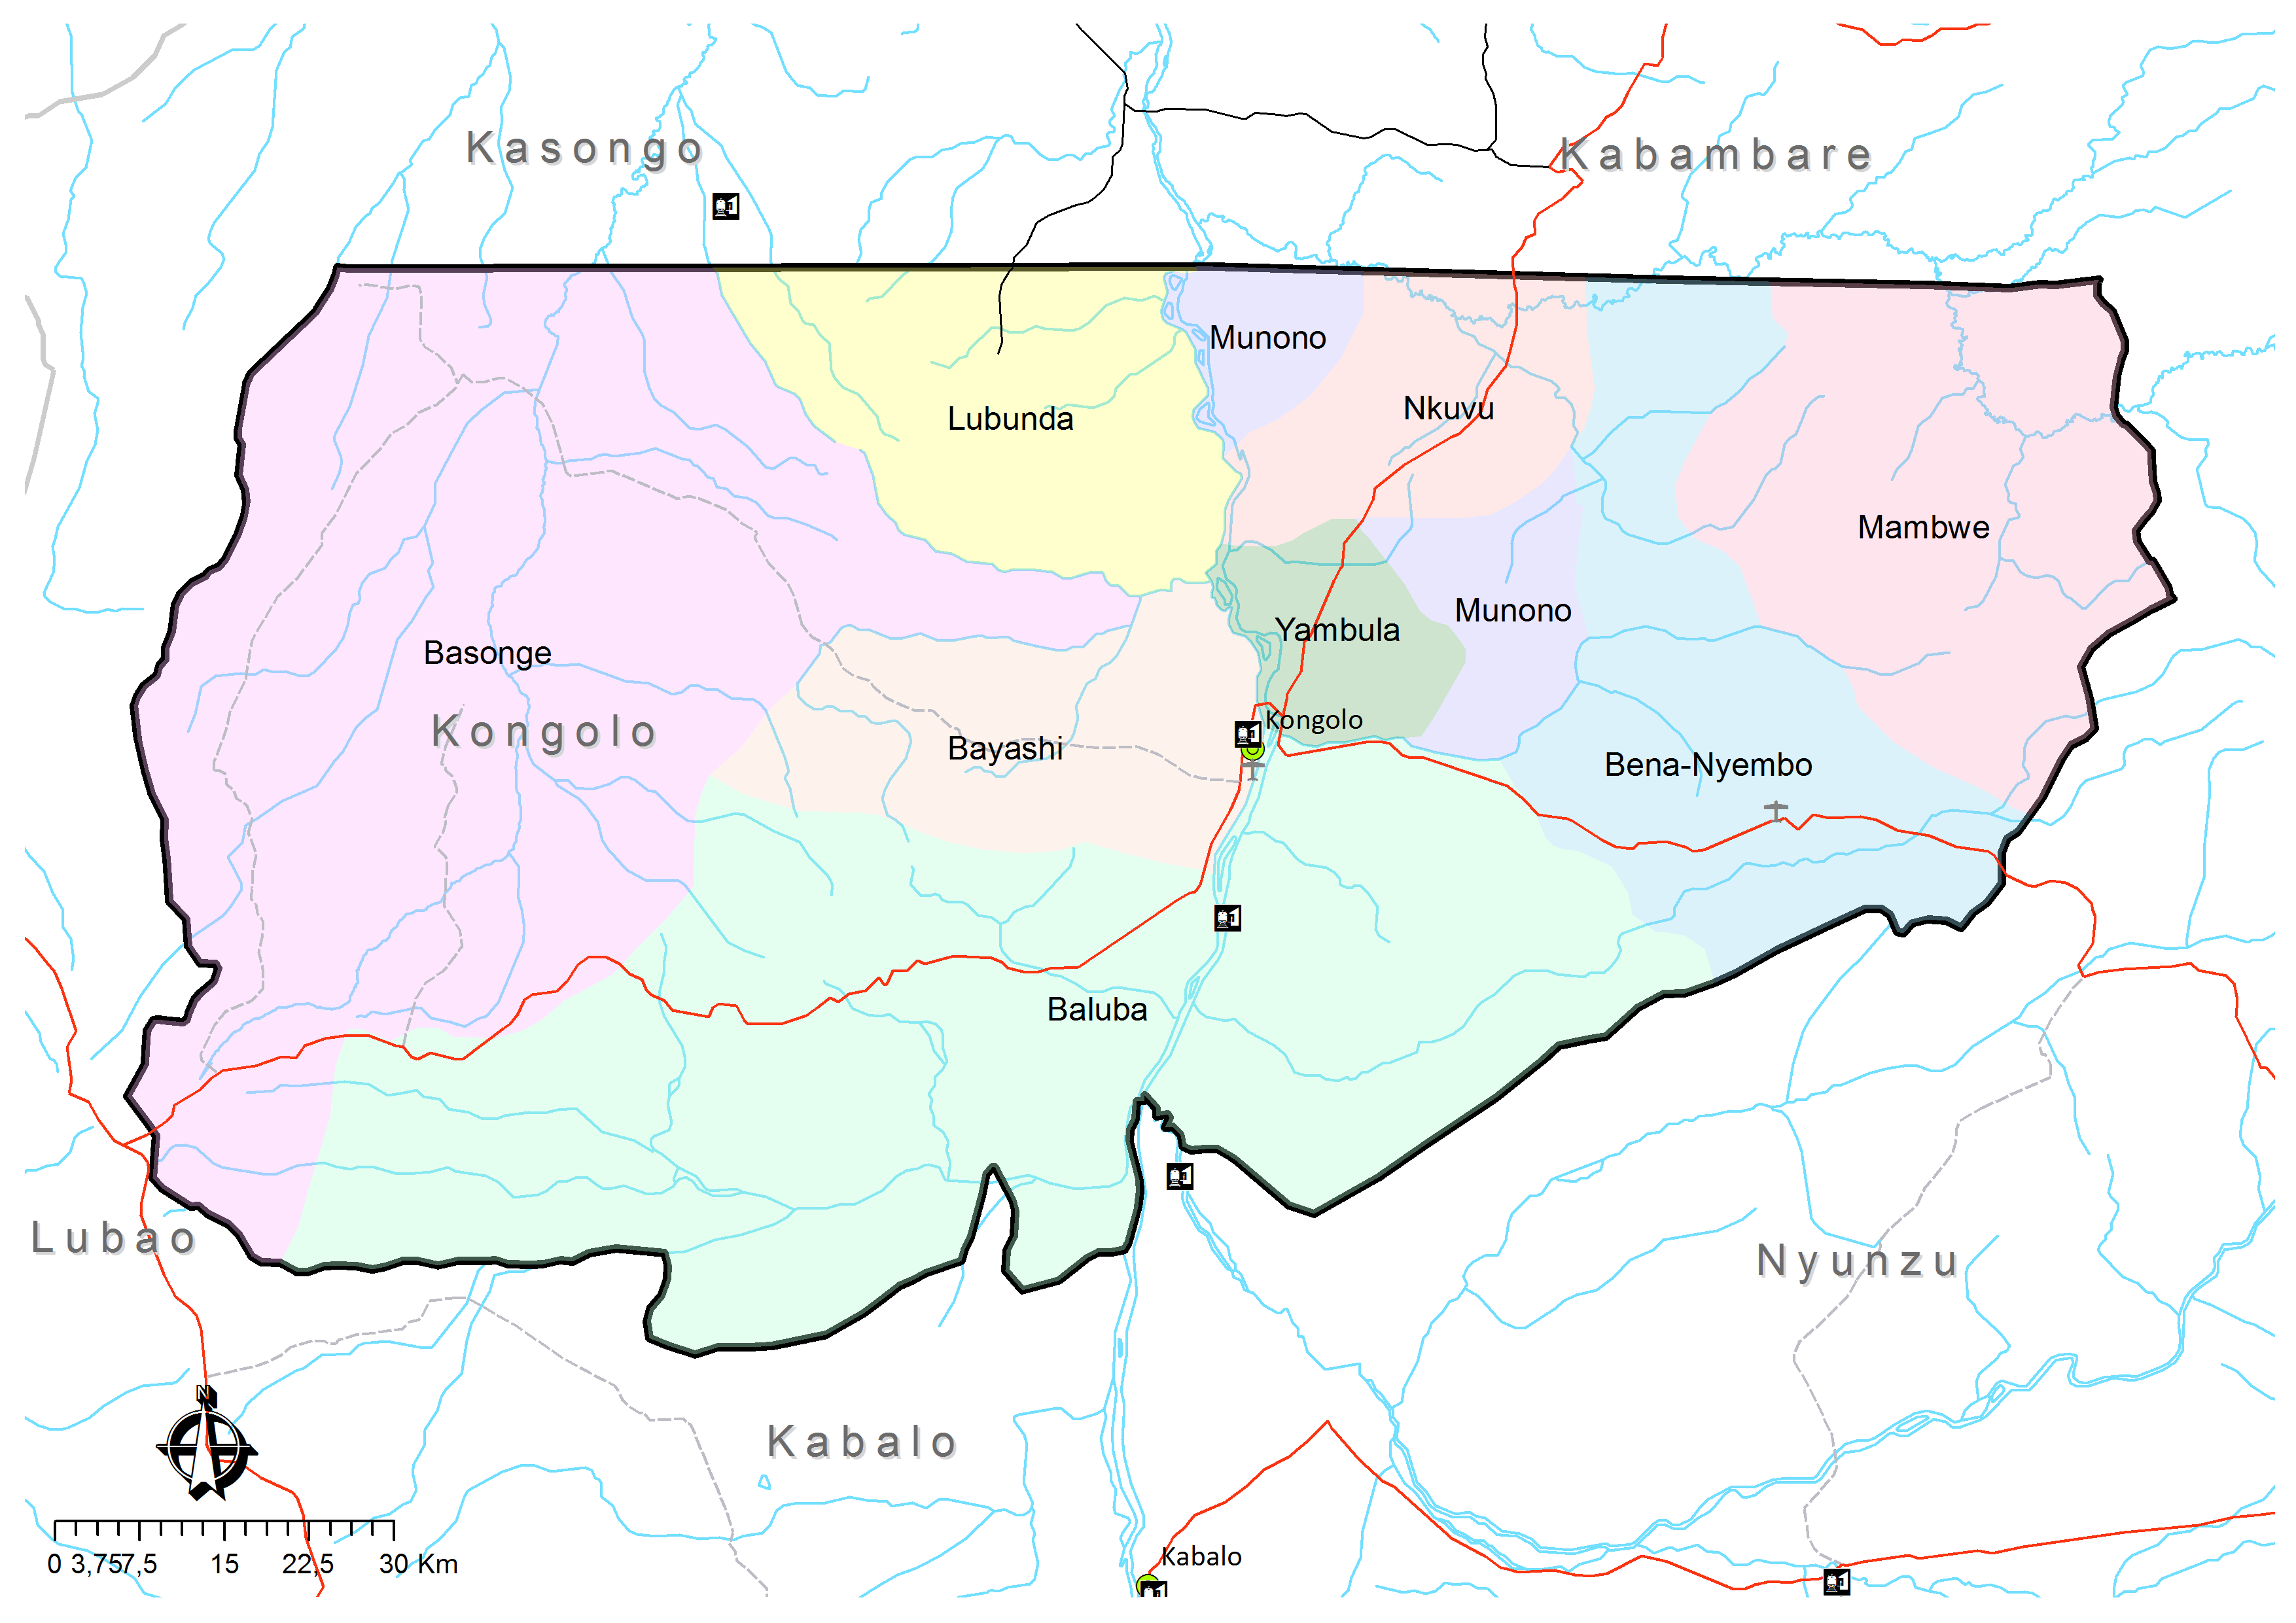 Résultat de recherche d'images pour "territoire kongolo caid""